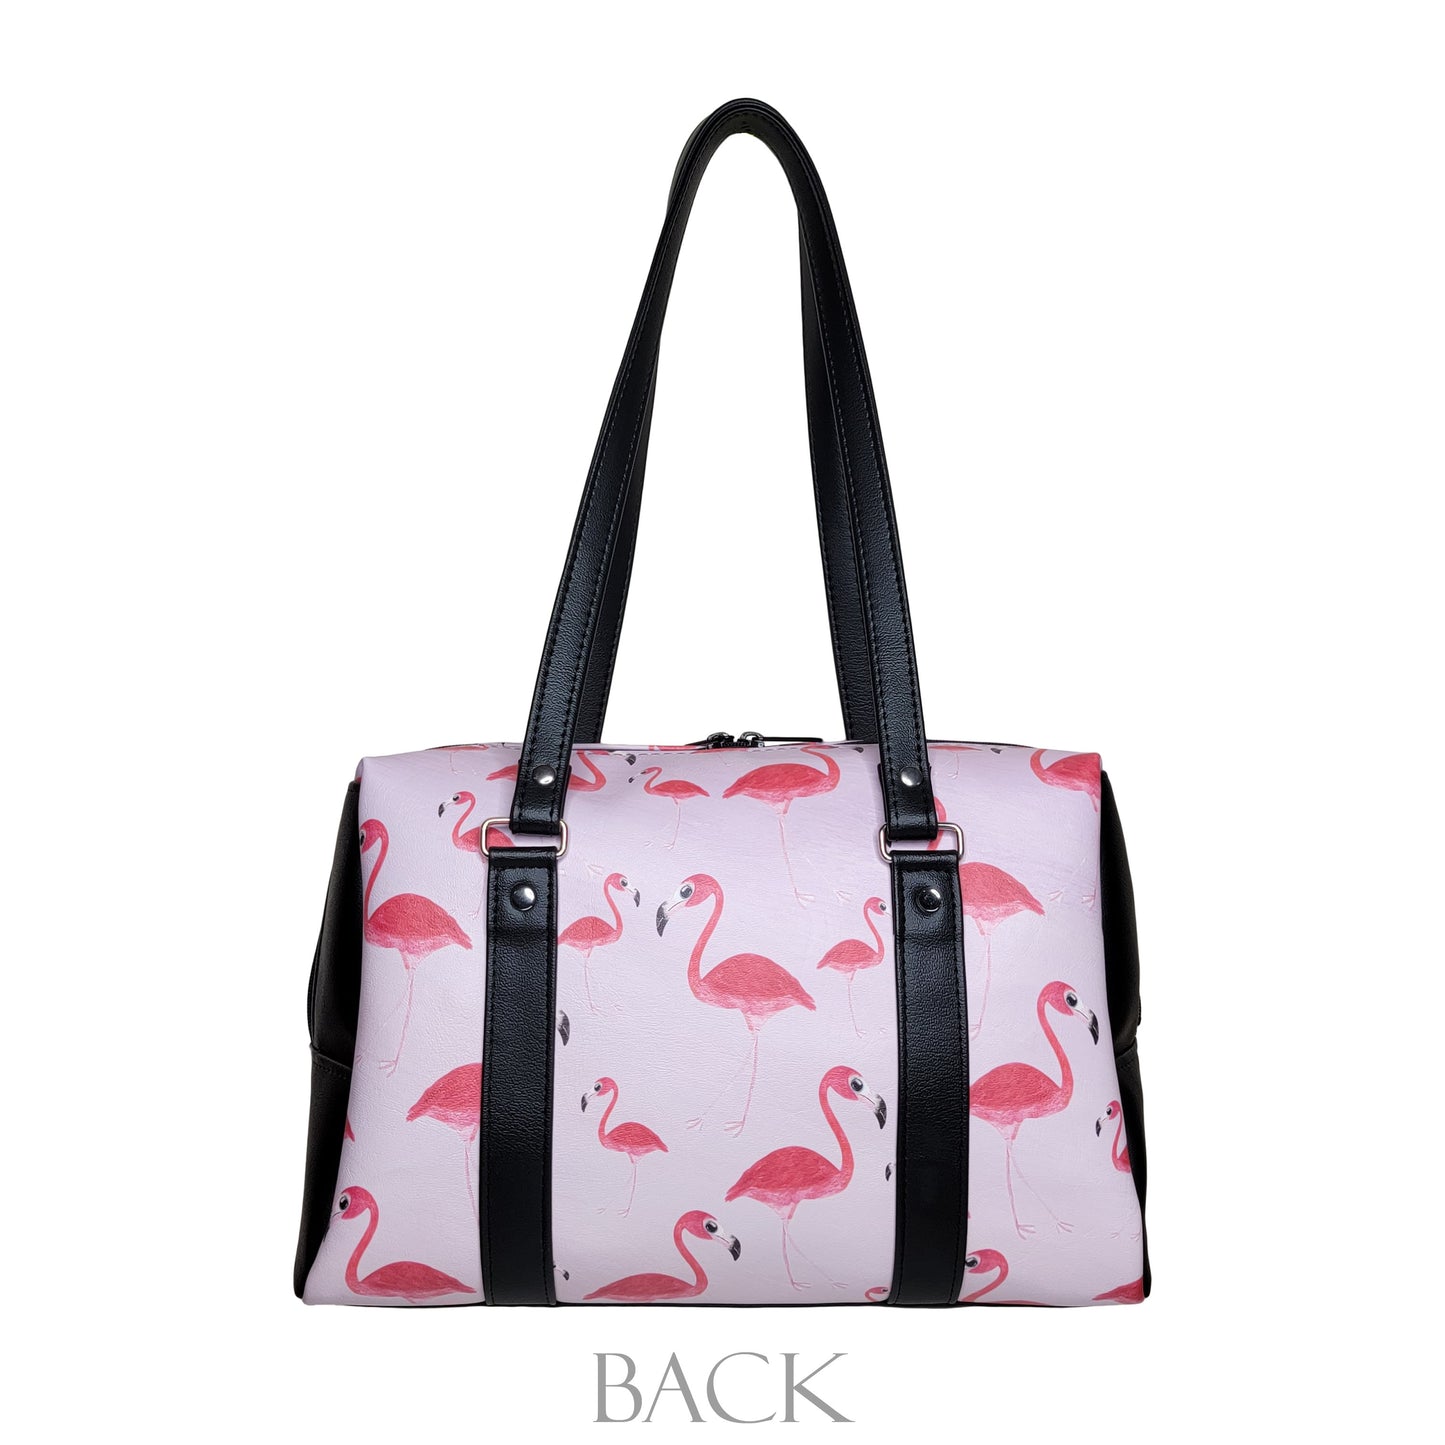 Flamingo Colette Handbag